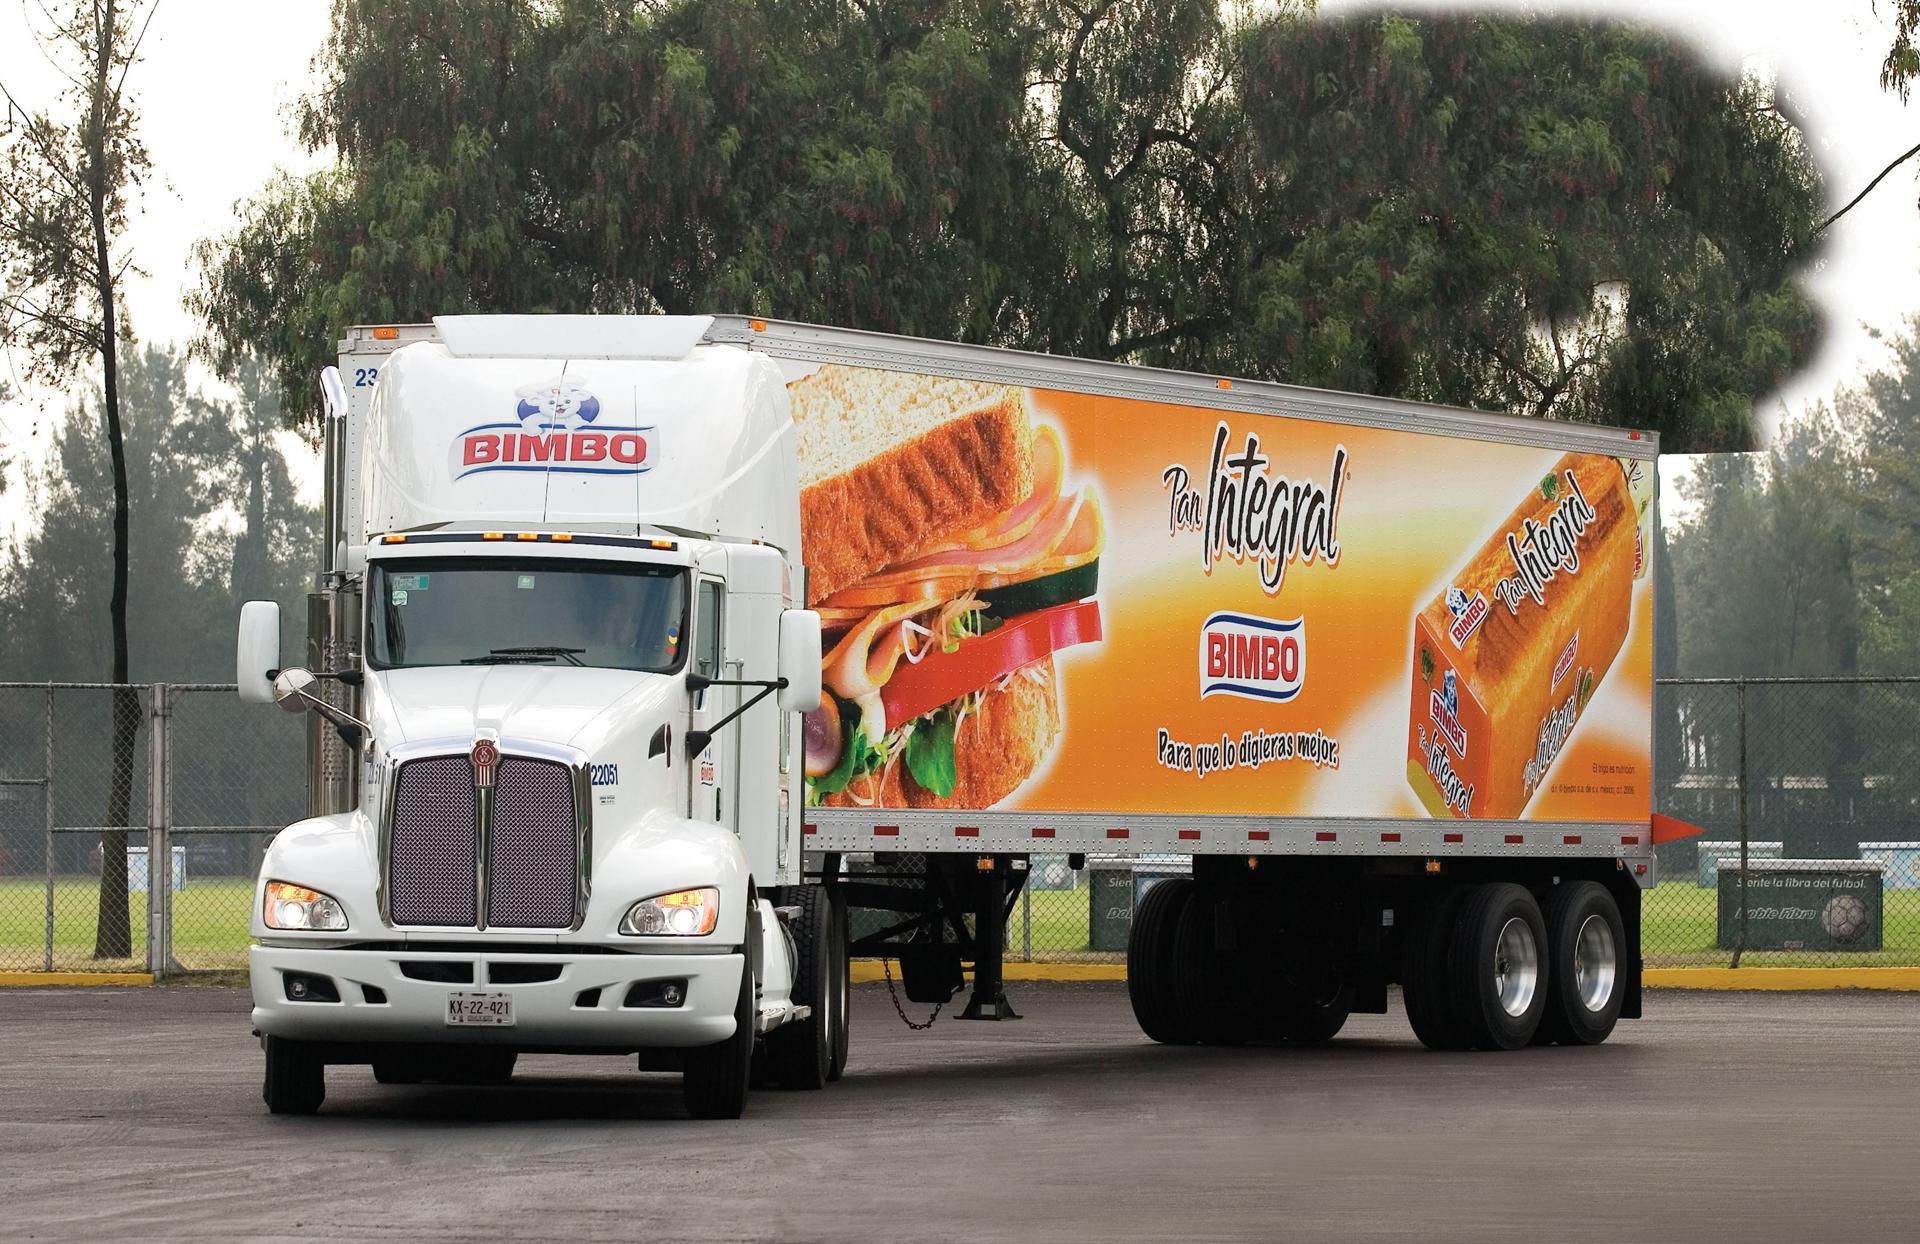 FotografÍa de archivo que muestra un camión que transporta productos de la empresa Bimbo, en Ciudad de México (México). EFE/Alex Cruz